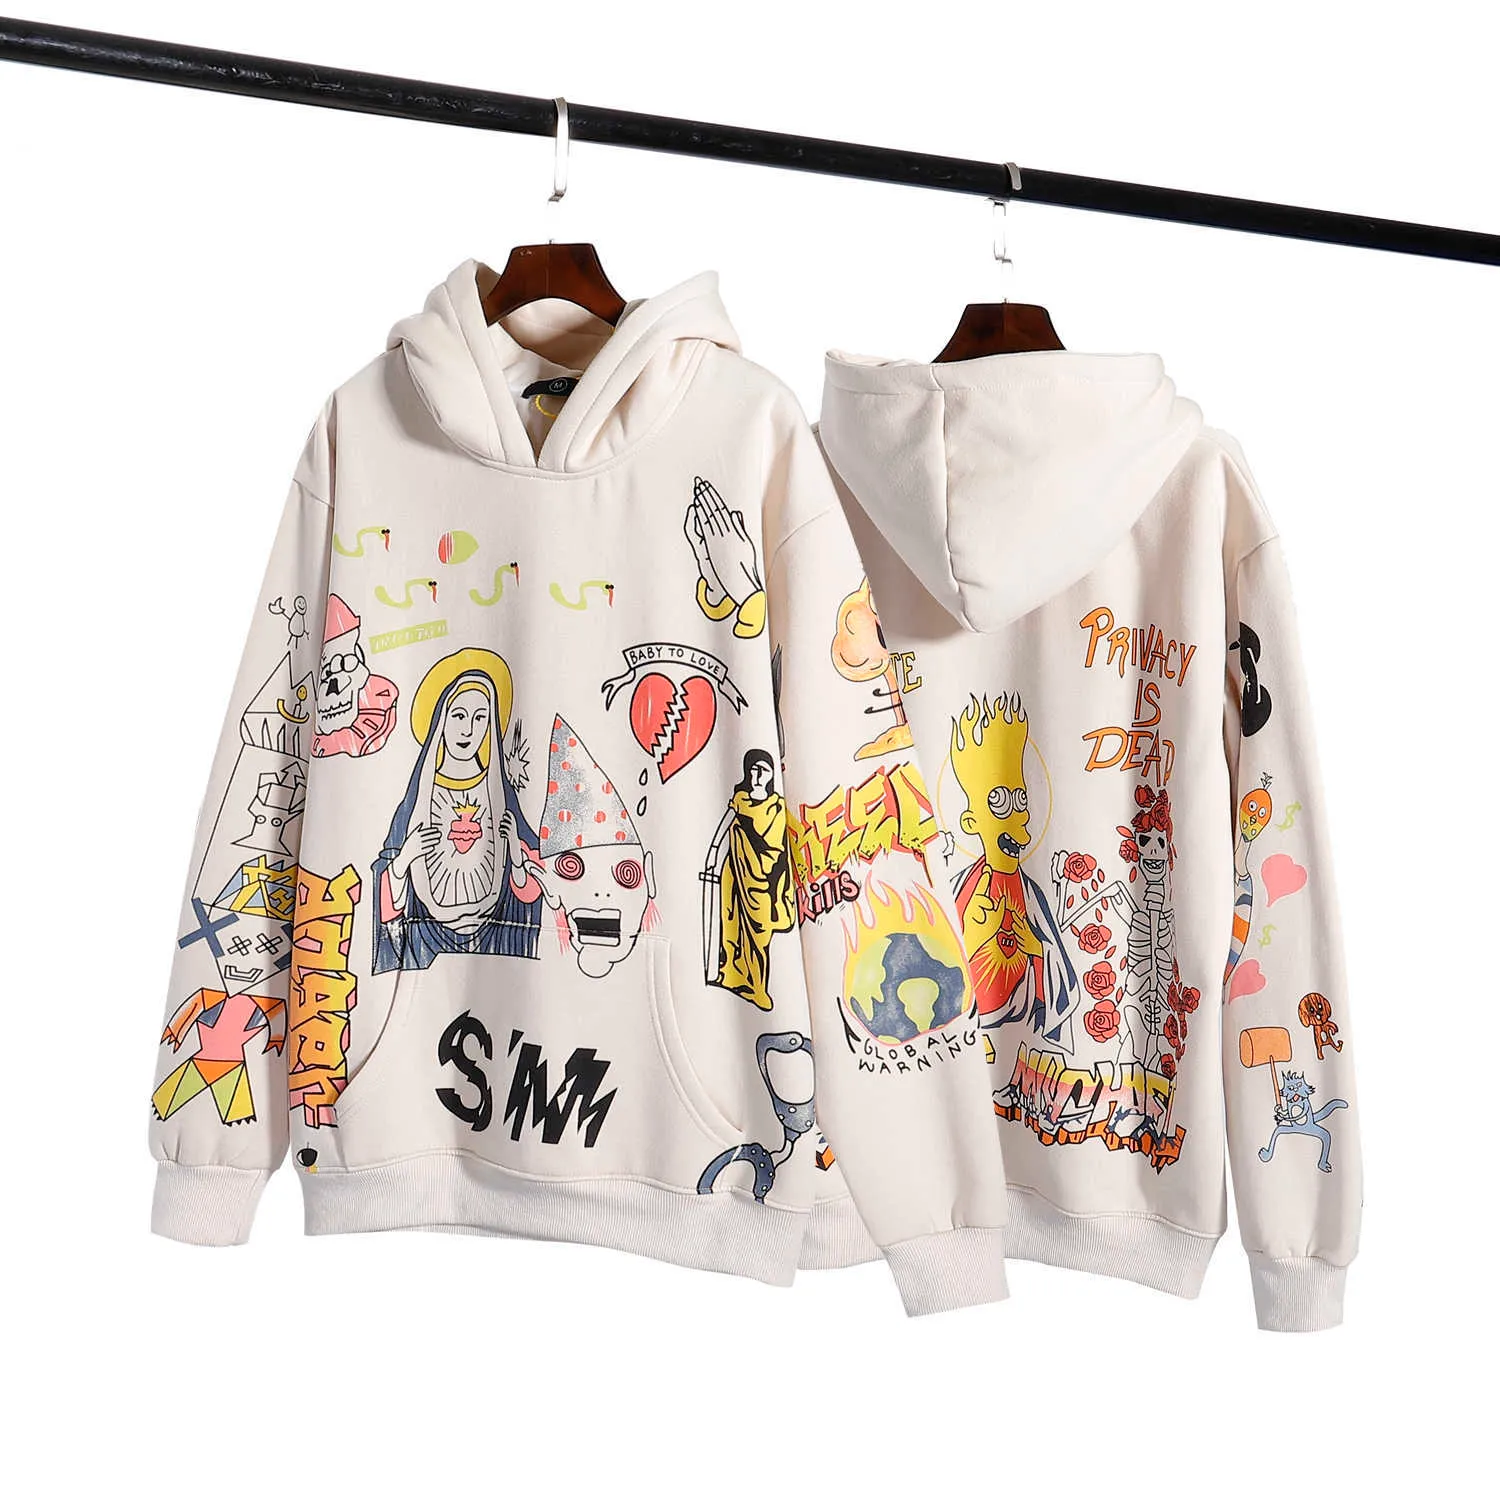 Мужские толстовки Осенние моды бренда Saint Michael винтаж американский мультфильм иллюстрации плюшевые с капюшоном пуловер мужской свитер